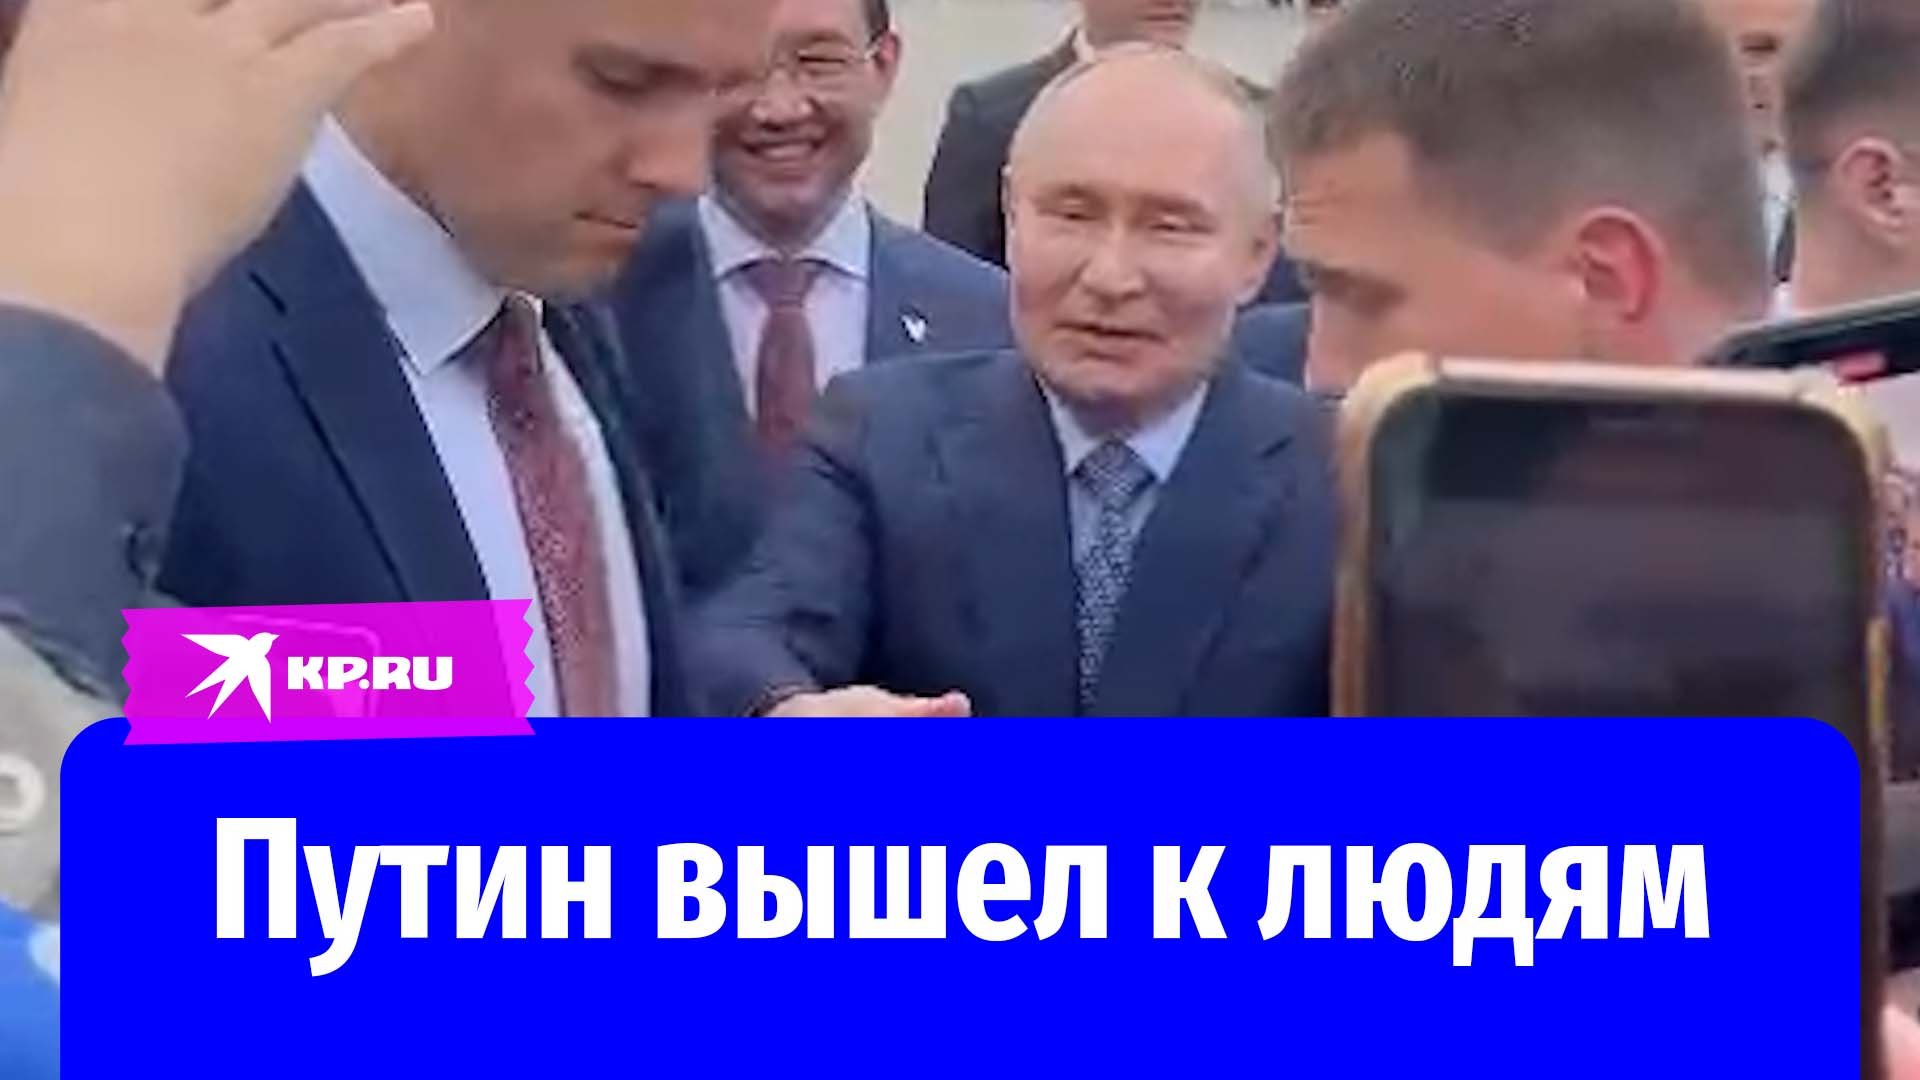 Путин пообщался с жителями Якутска